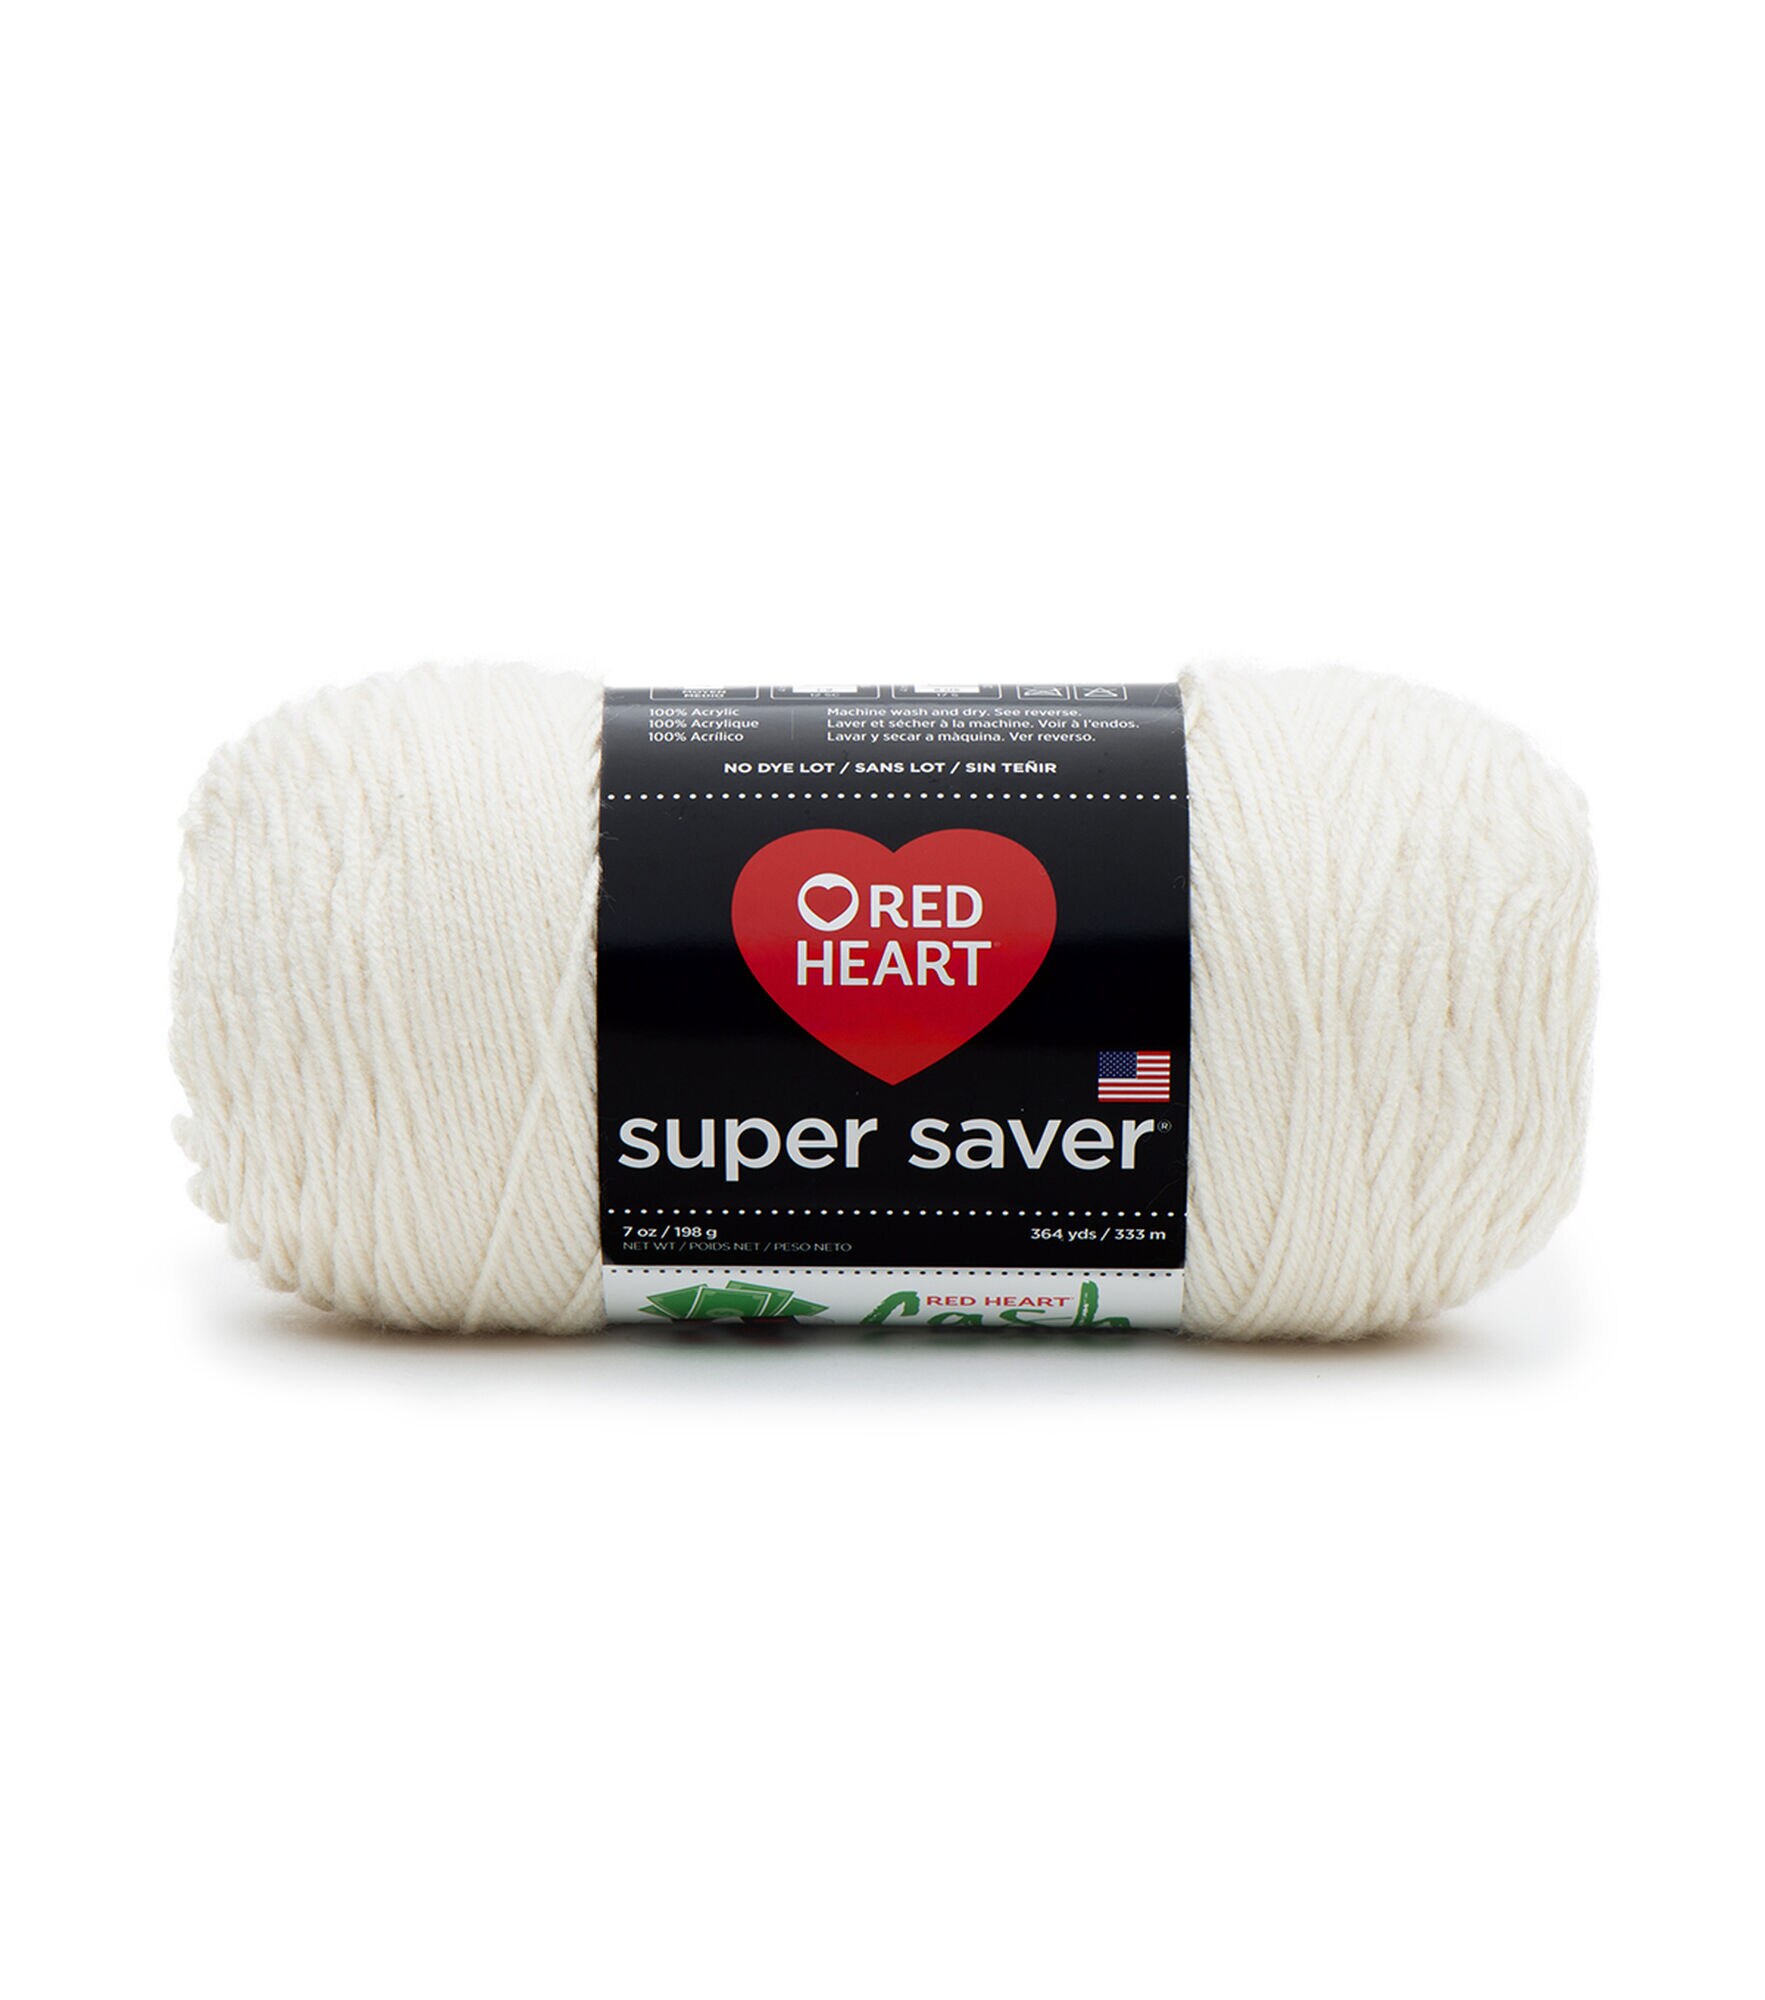 Red Heart Super Saver Yarn, Pale Yellow 0322, Medium 4 - 1 skein, 7 oz